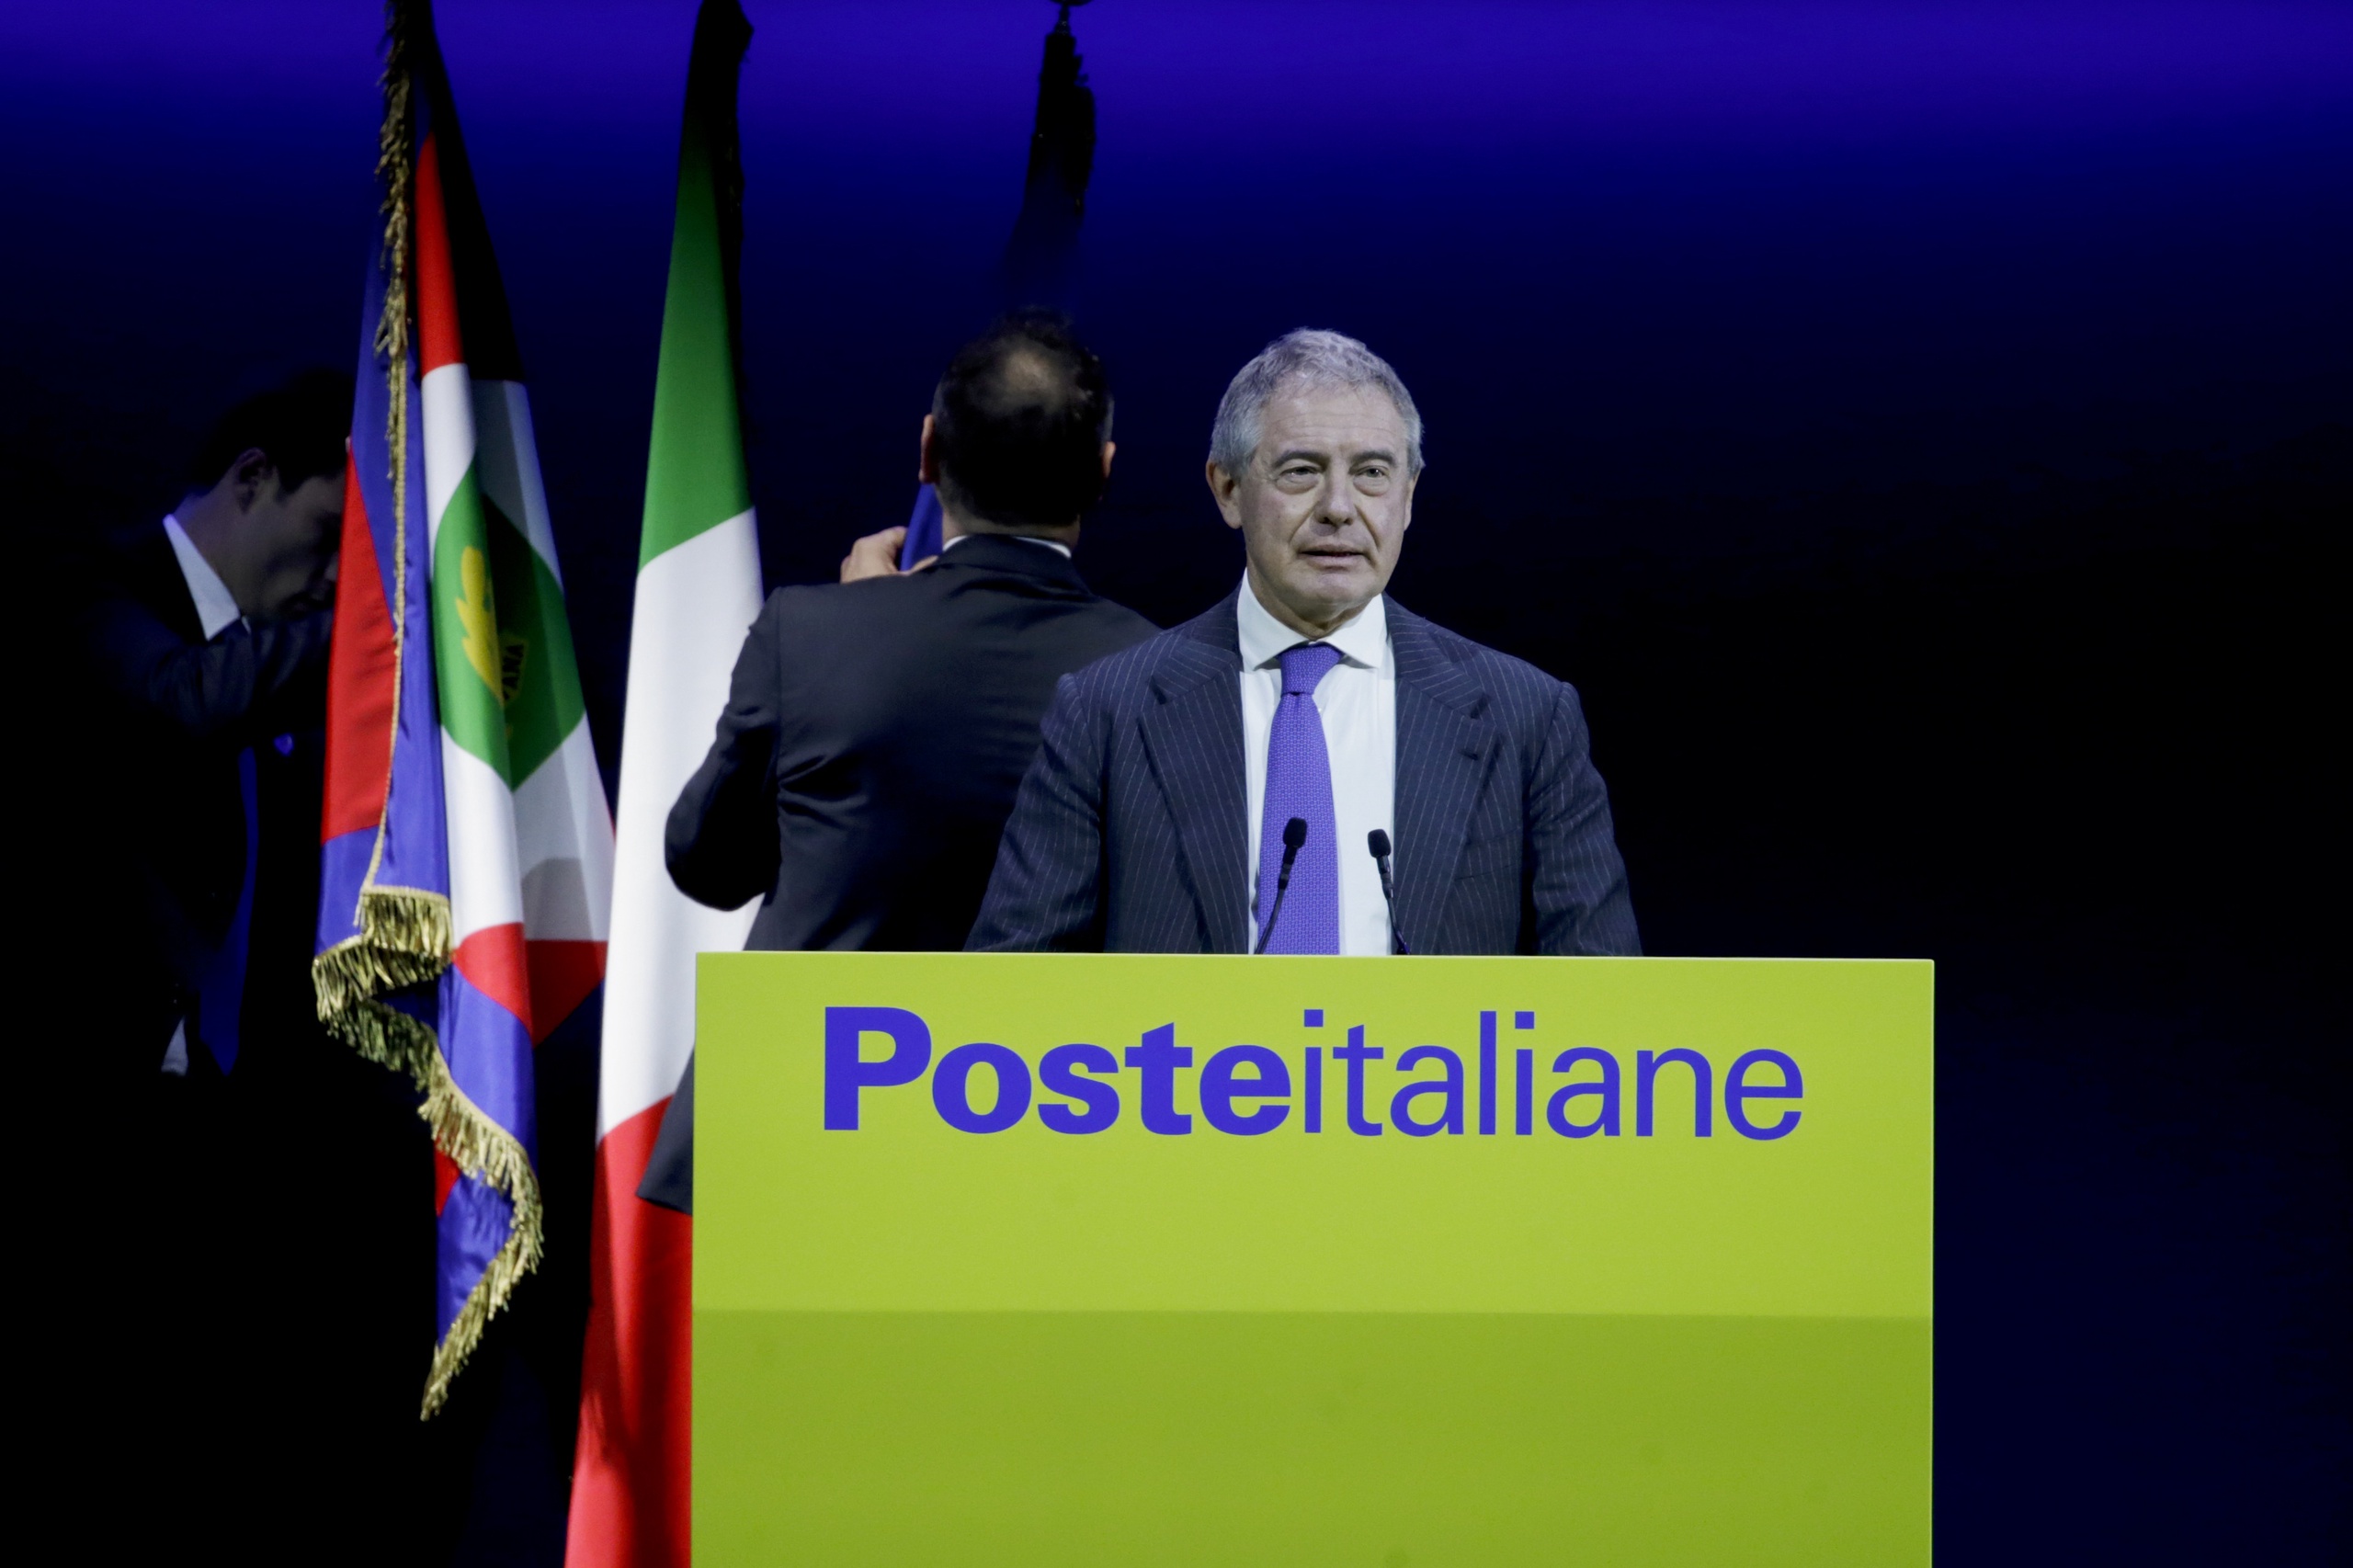 Voorstellen van de Europese Unie voor vergroeningssubsidies 'kunnen en moeten' worden verbeterd zo betoogt de Italiaanse minister van Industrie Adolfo Urso vandaag. Dat meldt Reuters. 